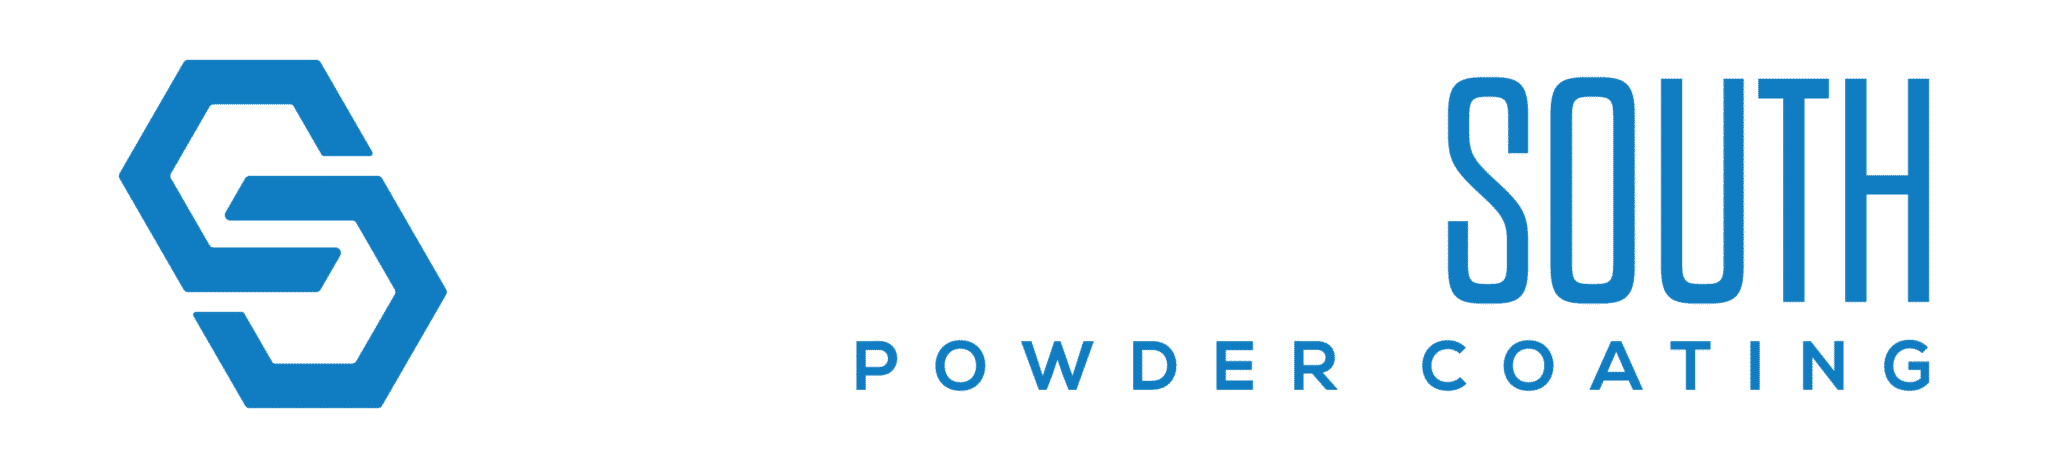 CrosslinkSouth_website_logo